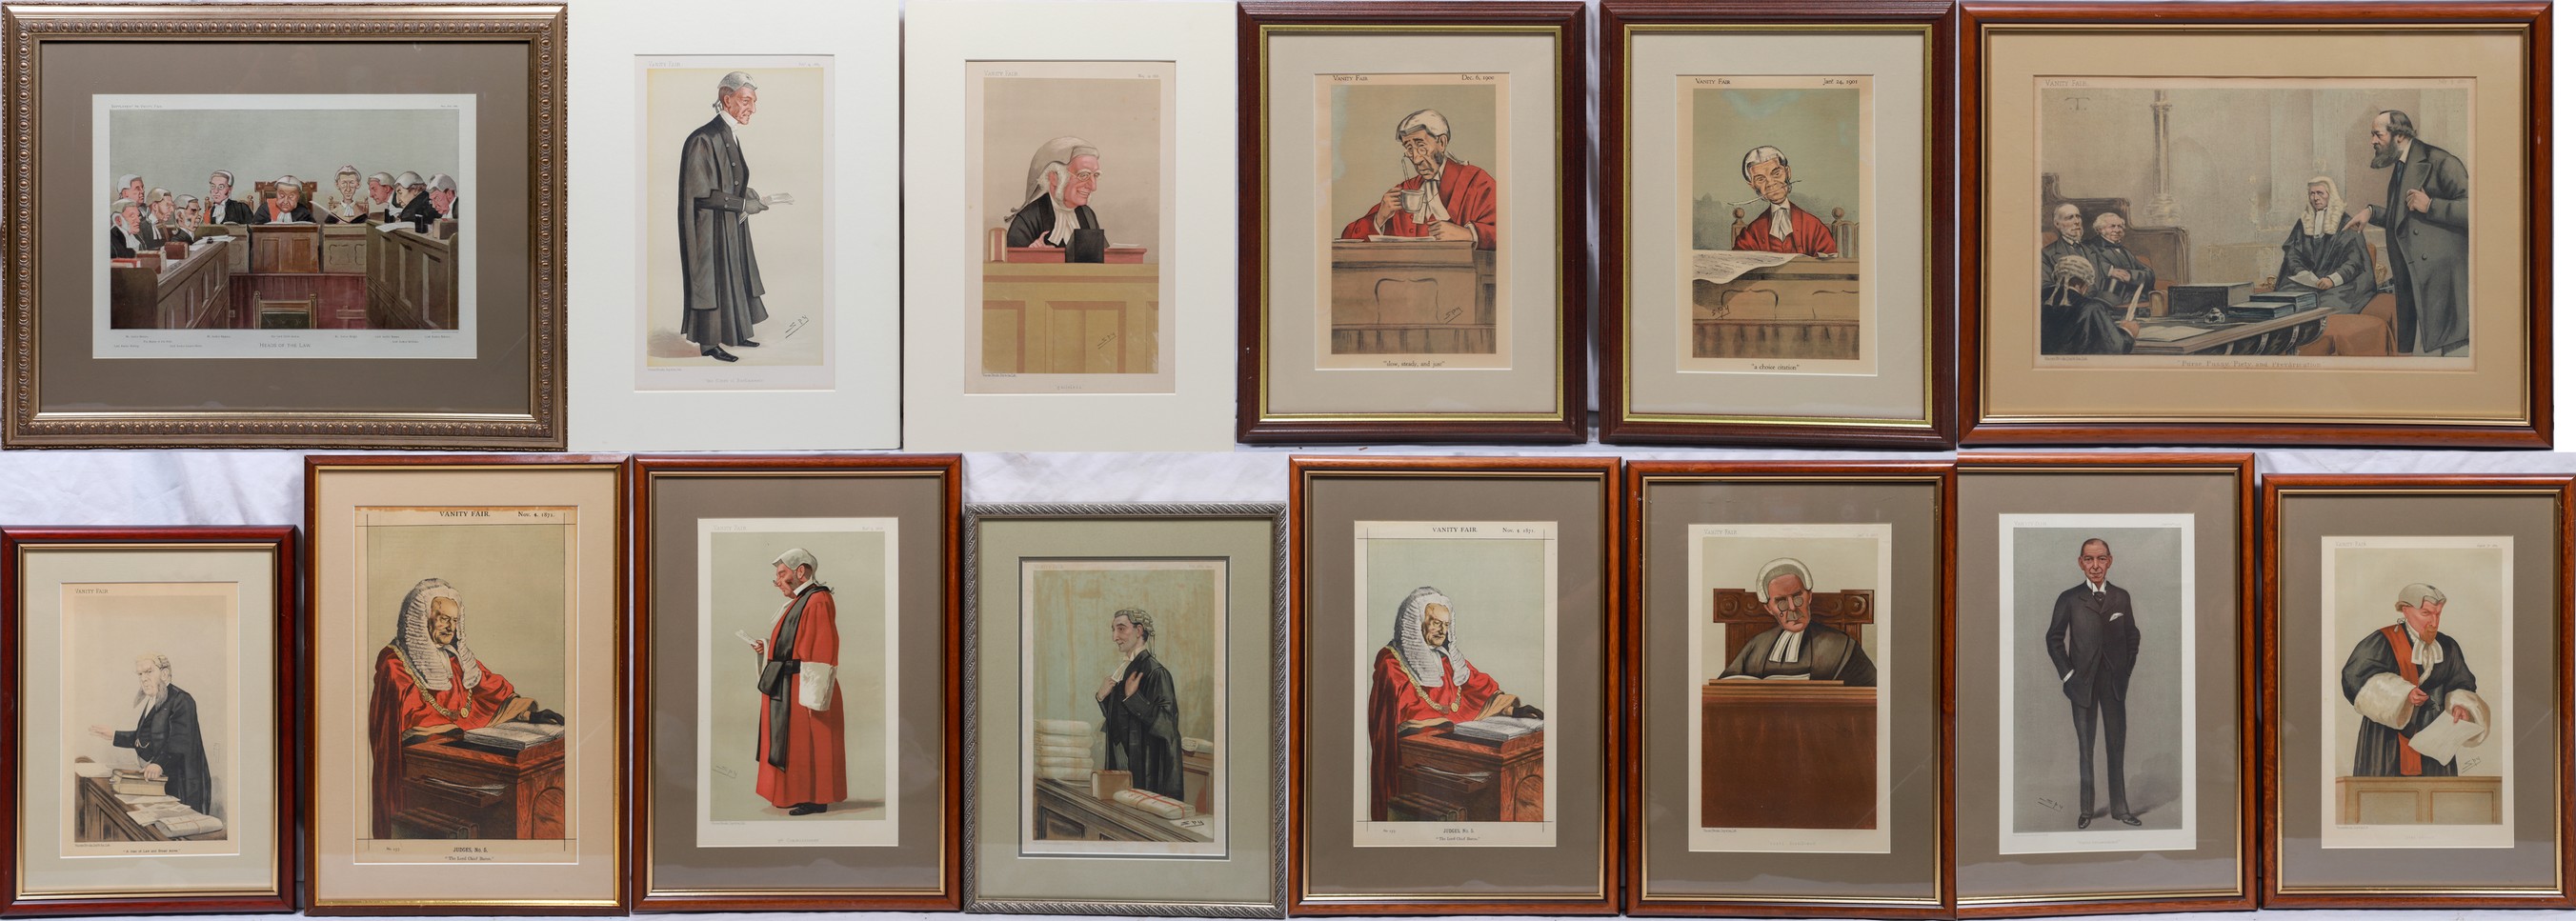  14 Vanity Fair prints of judges  2e0811